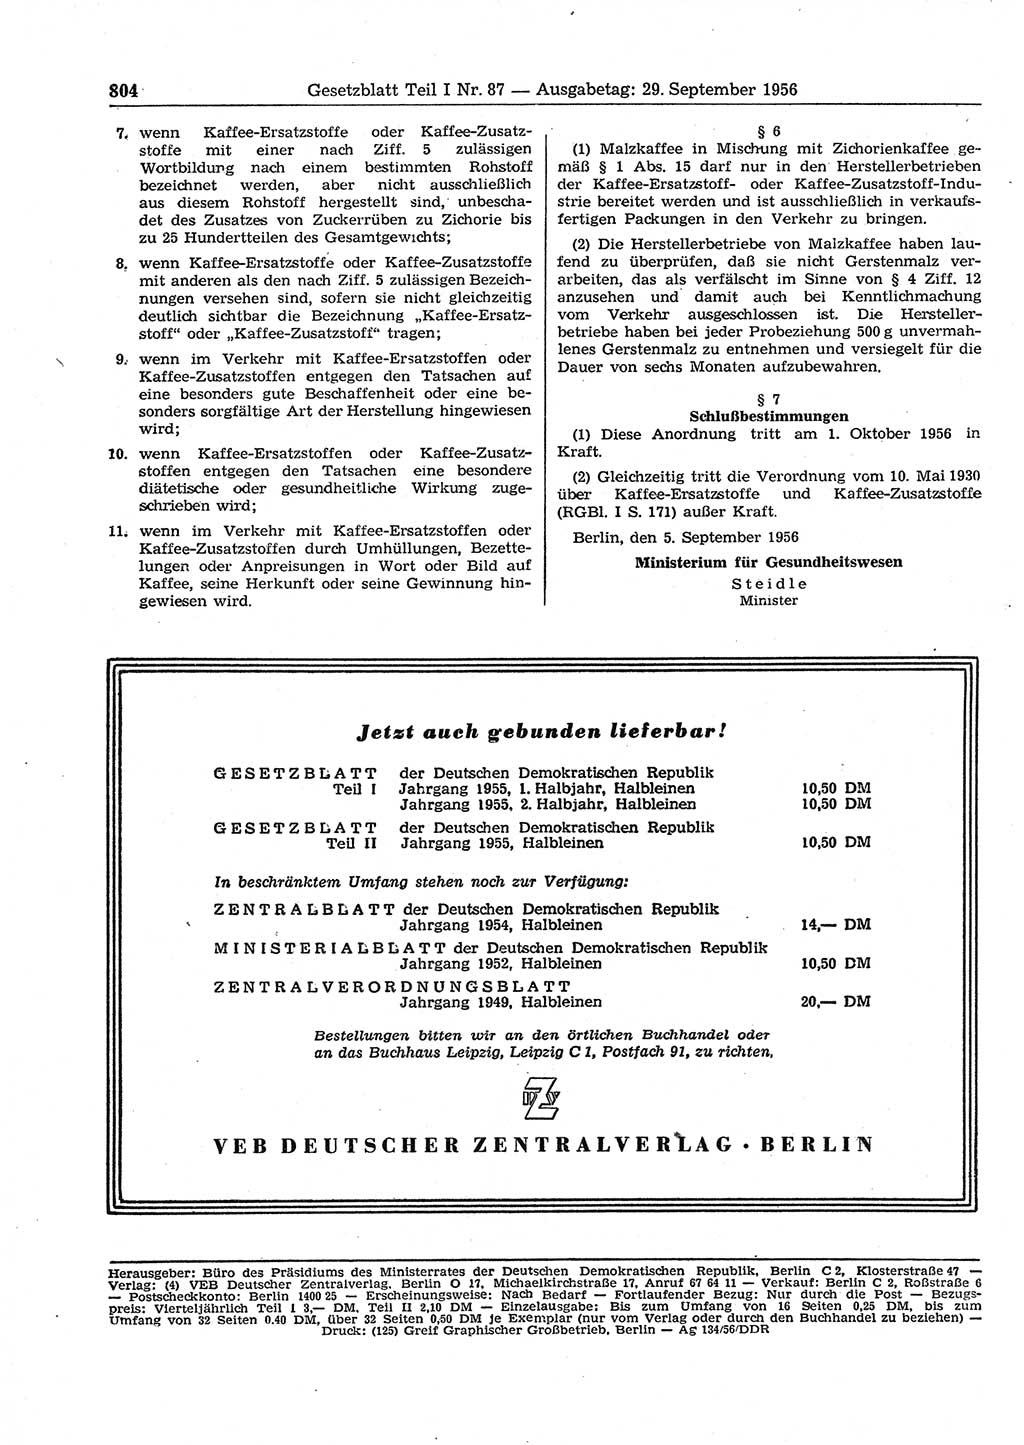 Gesetzblatt (GBl.) der Deutschen Demokratischen Republik (DDR) Teil Ⅰ 1956, Seite 804 (GBl. DDR Ⅰ 1956, S. 804)